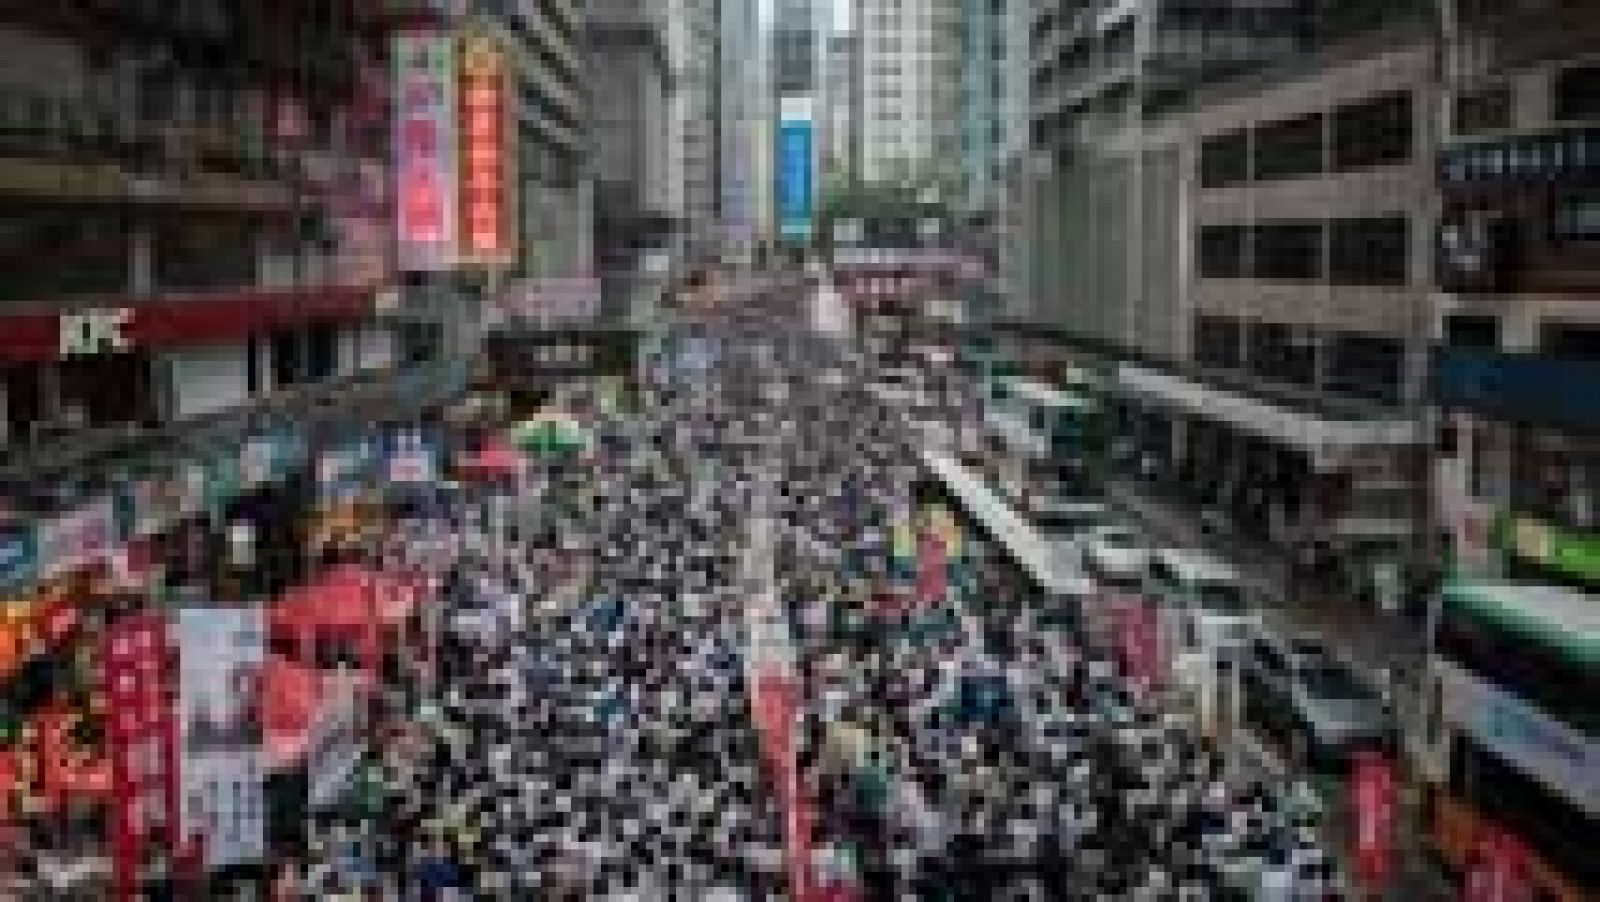 Más de medio millón de personas se han manifestado en Hong Kong para pedir más democracia